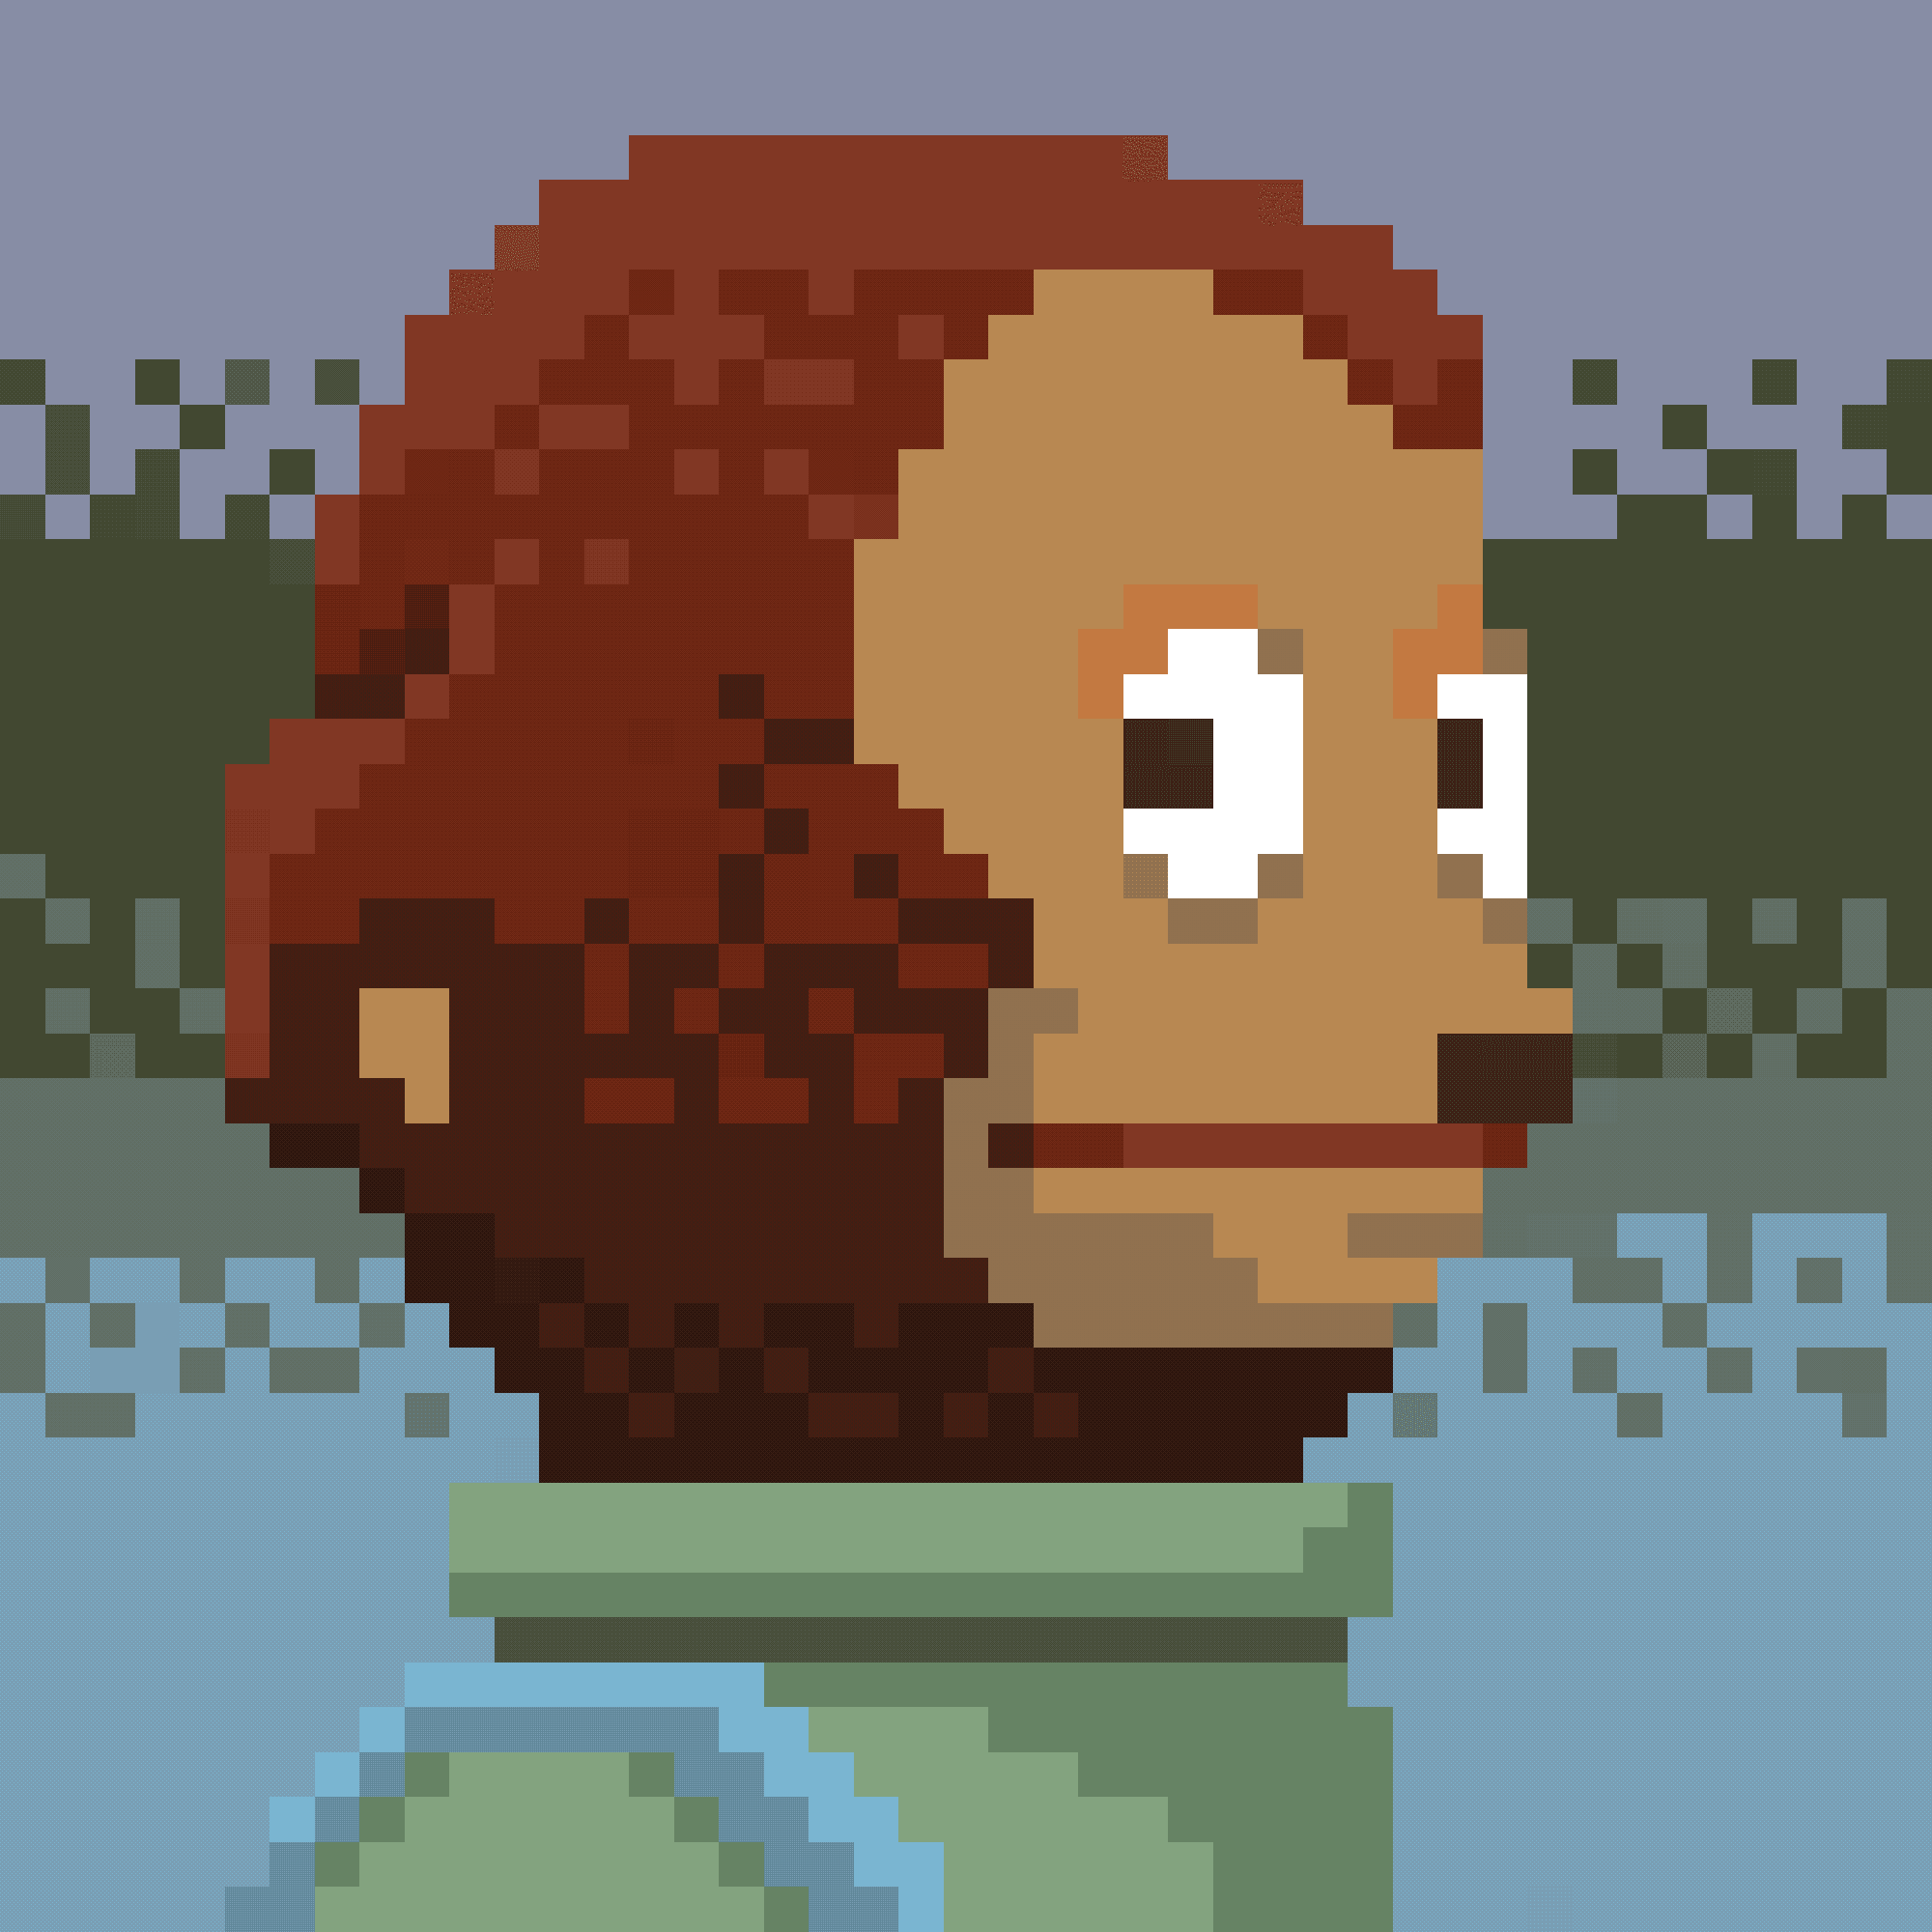 Awkward Look Monkey Puppet Meme Pixel Art Brick Mosaic